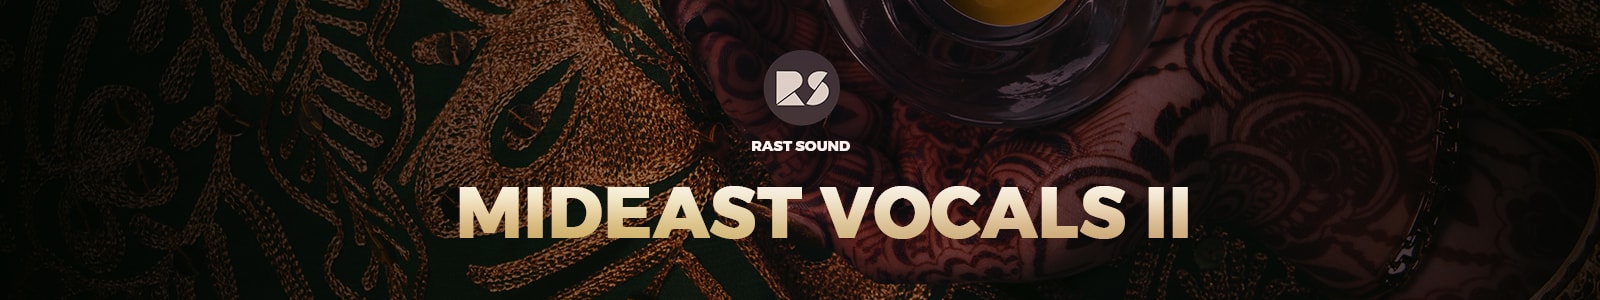 MidEast Vocals II by rast sound